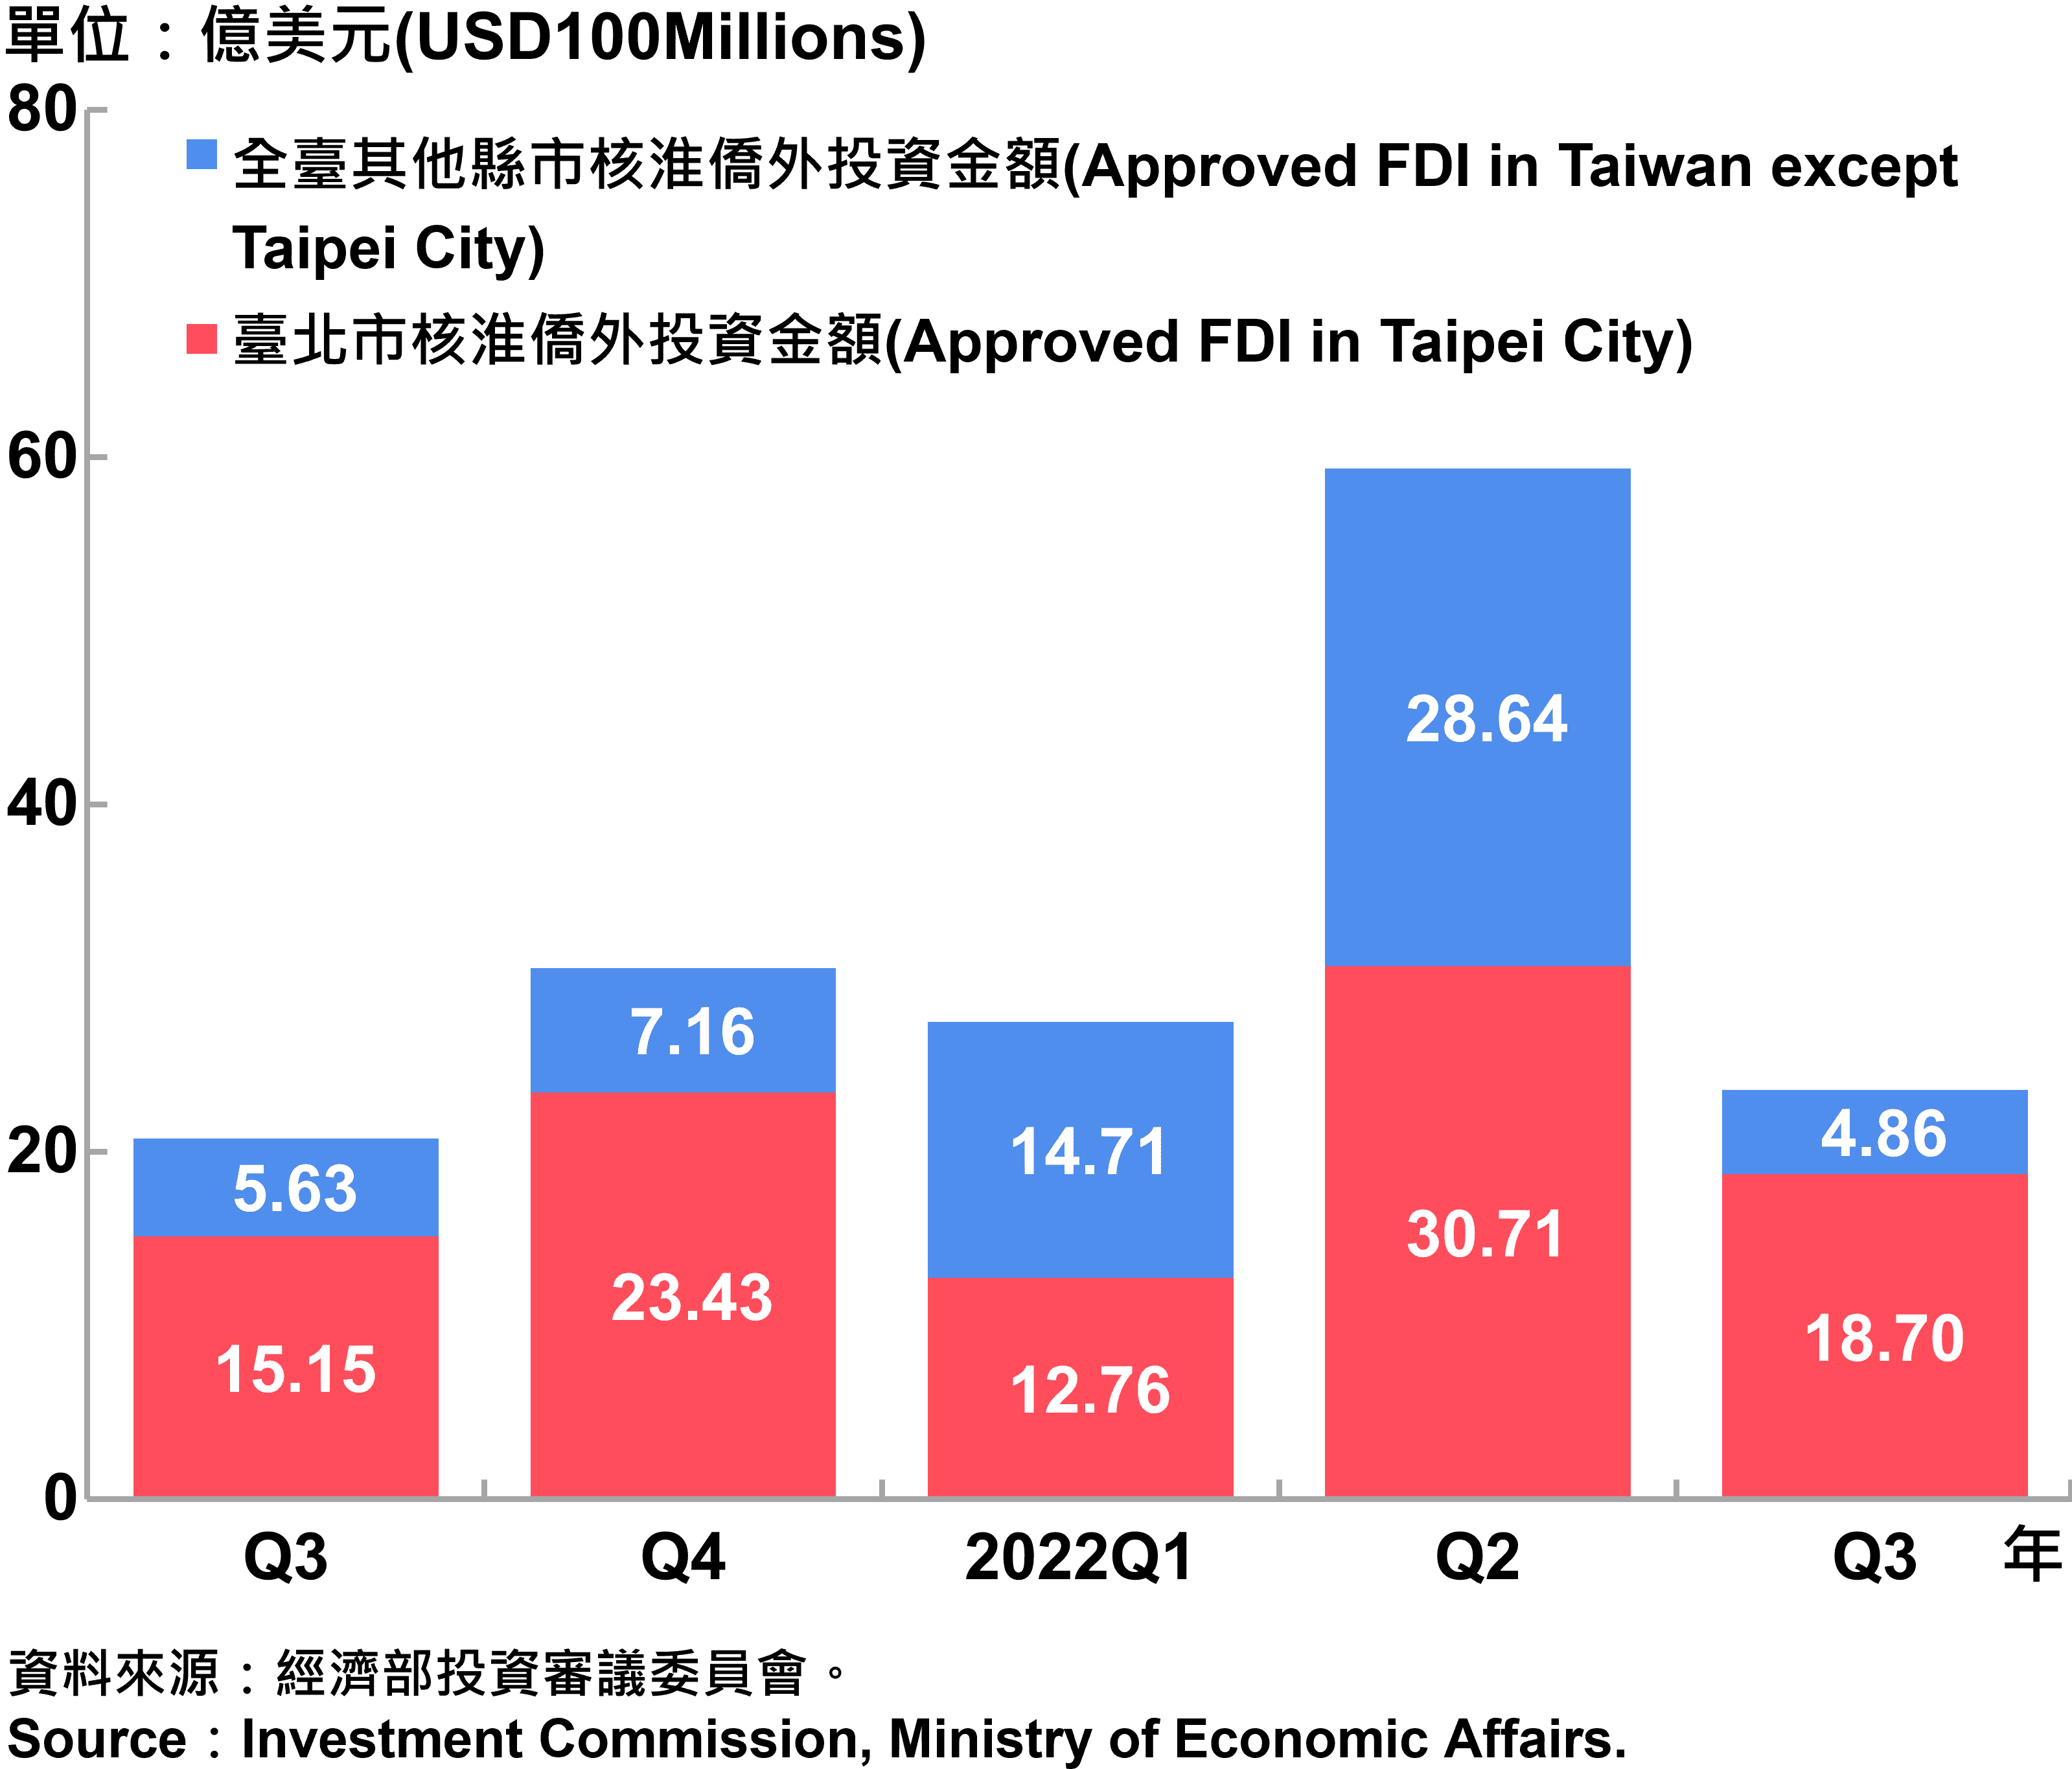 臺北市與全國僑外投資金額—2022Q3 Foreign Direct Investment（FDI）in Taipei City and Taiwan—2022Q3